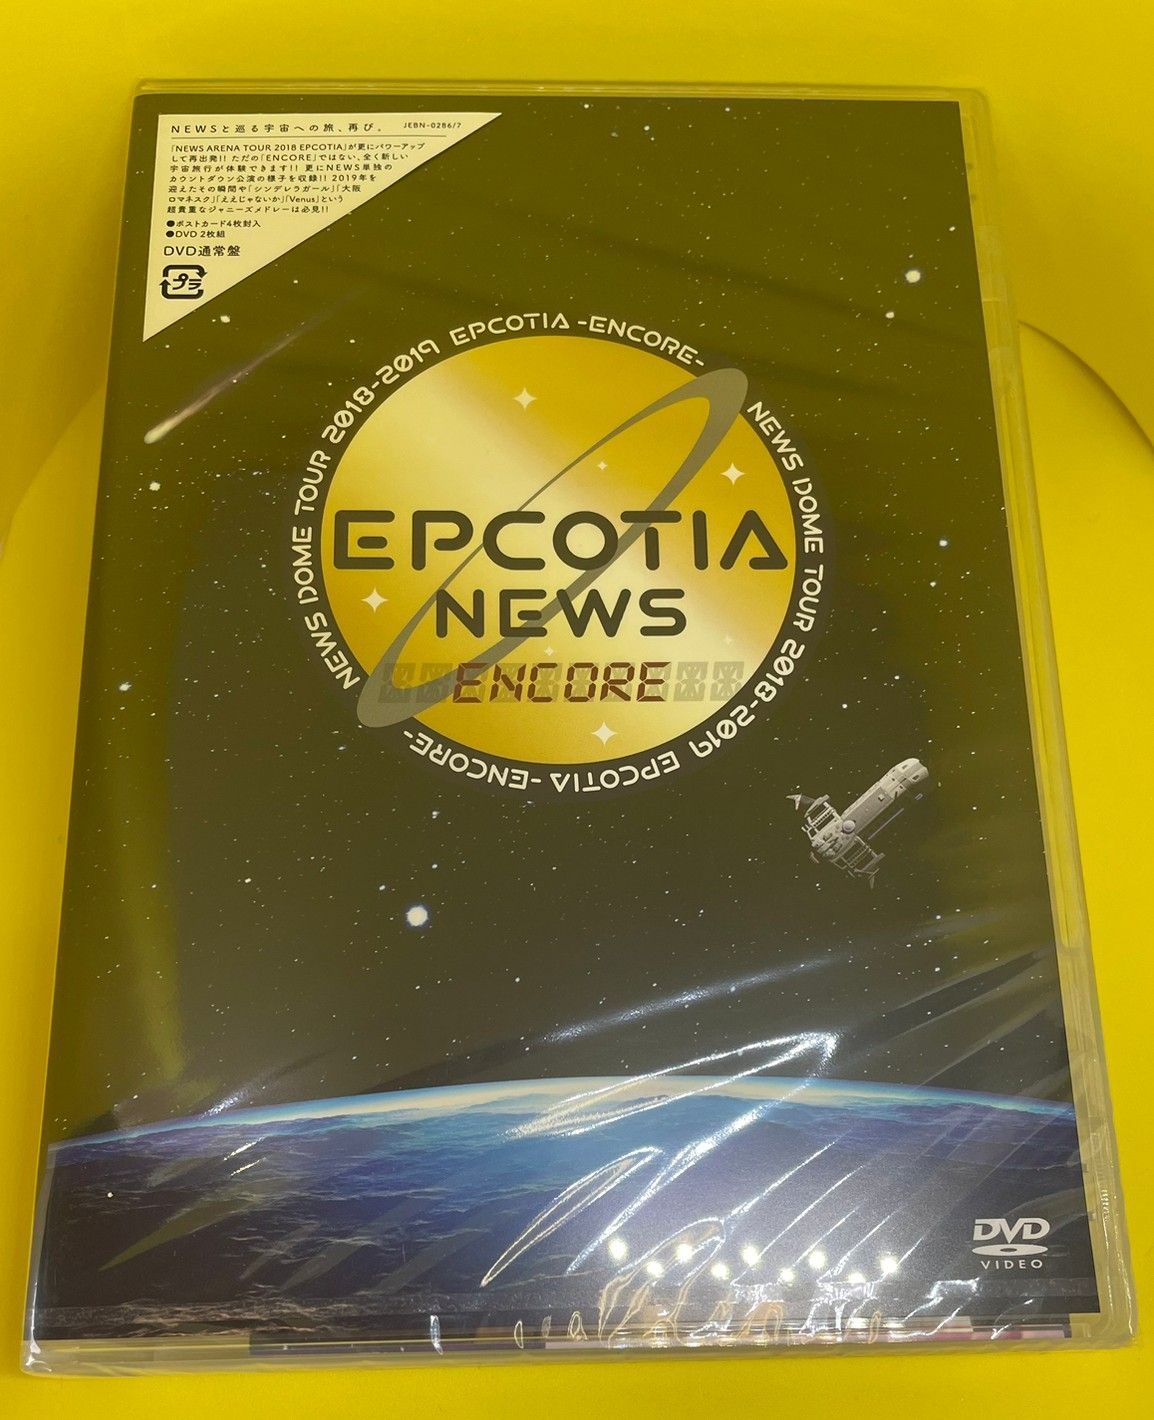 NEWS EPCOTIA ENCORE DVD | hmgrocerant.com